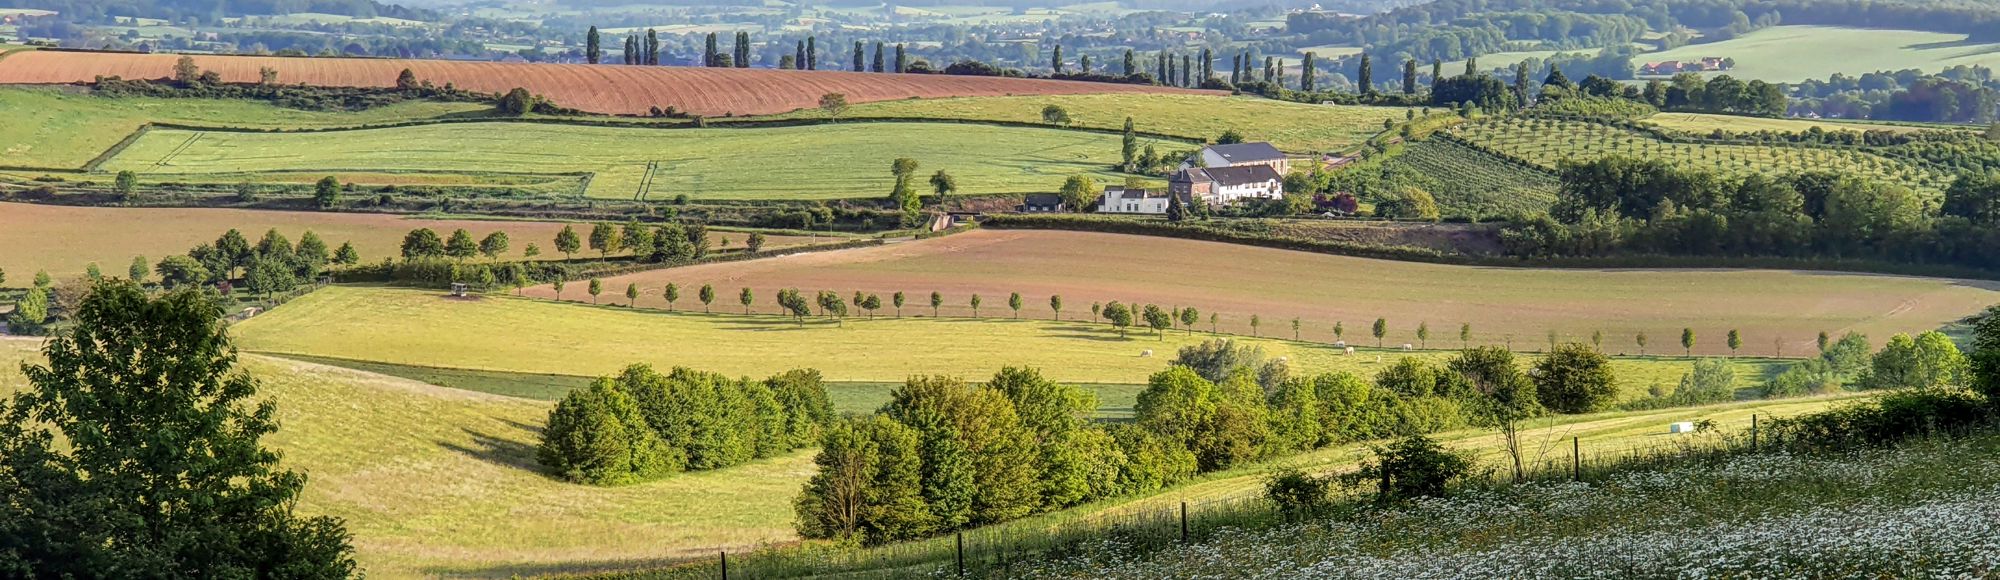 Landschapsfoto vanaf de Eyserbosweg op de 'Toscana' in Nederland